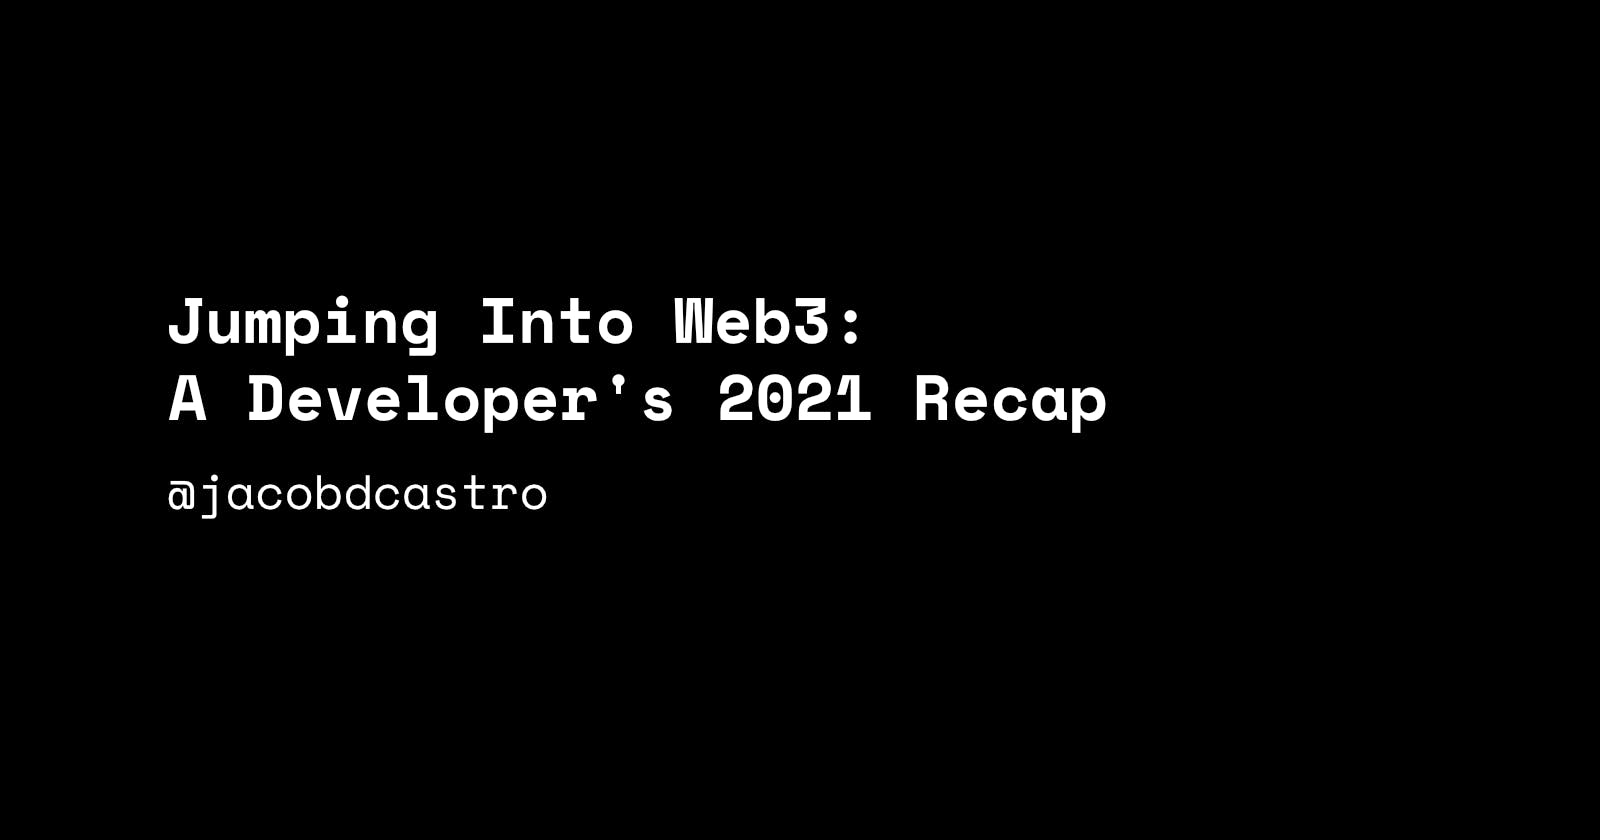 Jumping into Web3: A Developer's 2021 Recap